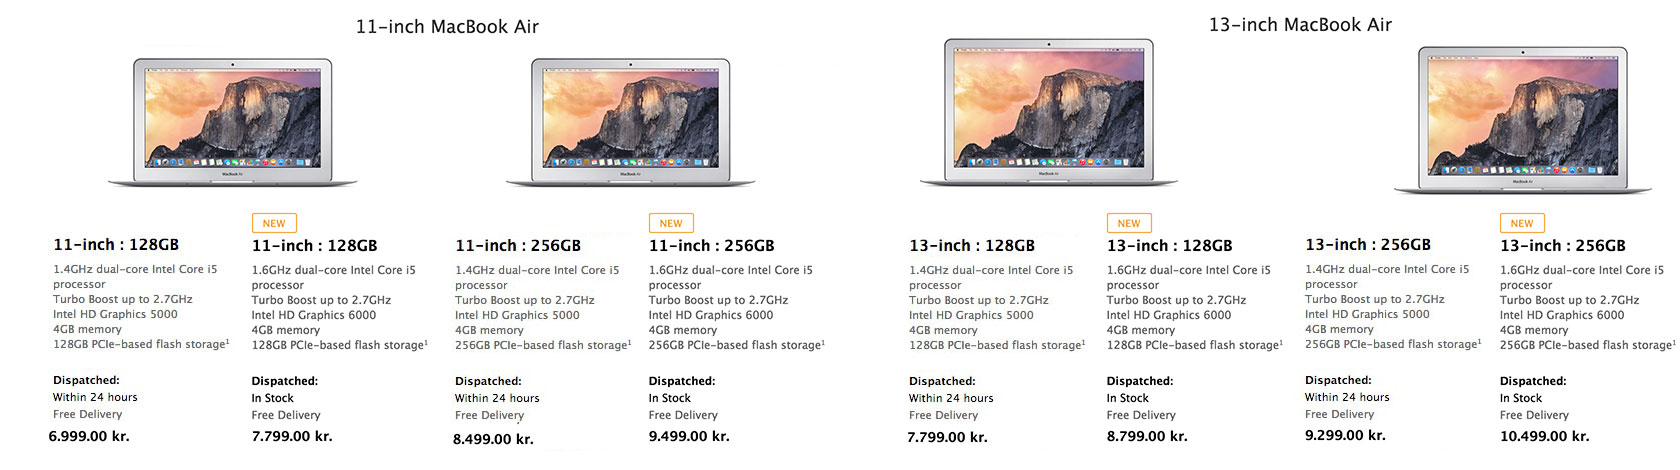 Nye Macbook air vs gamle Macbook air